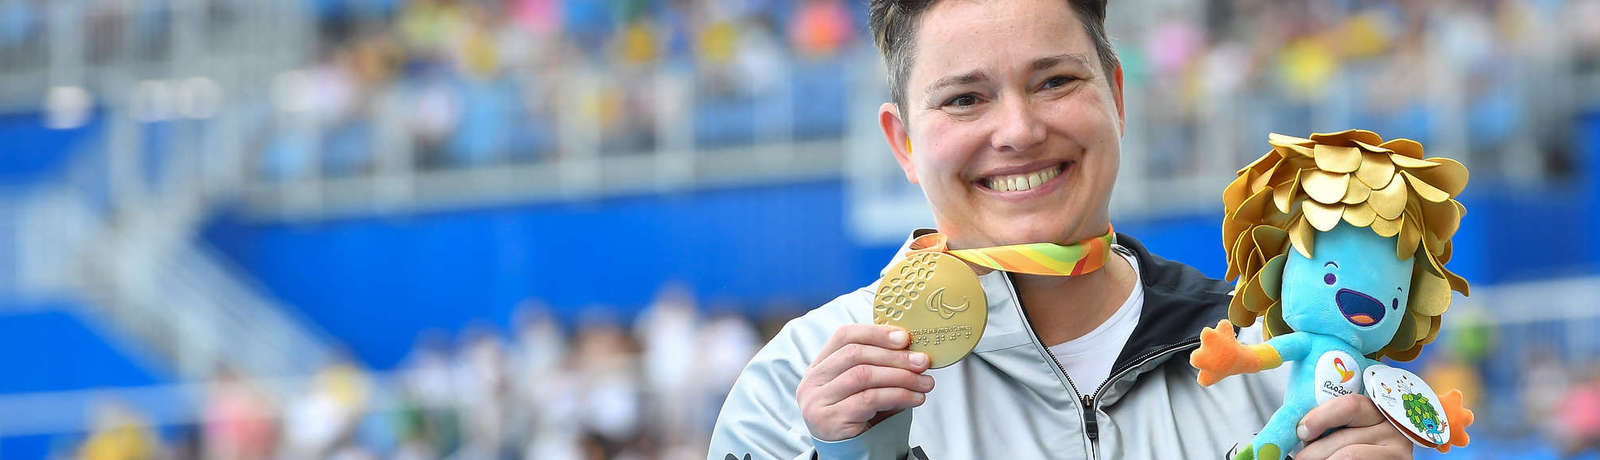 Birgit Kober präsentiert stolz ihre Goldmedaille